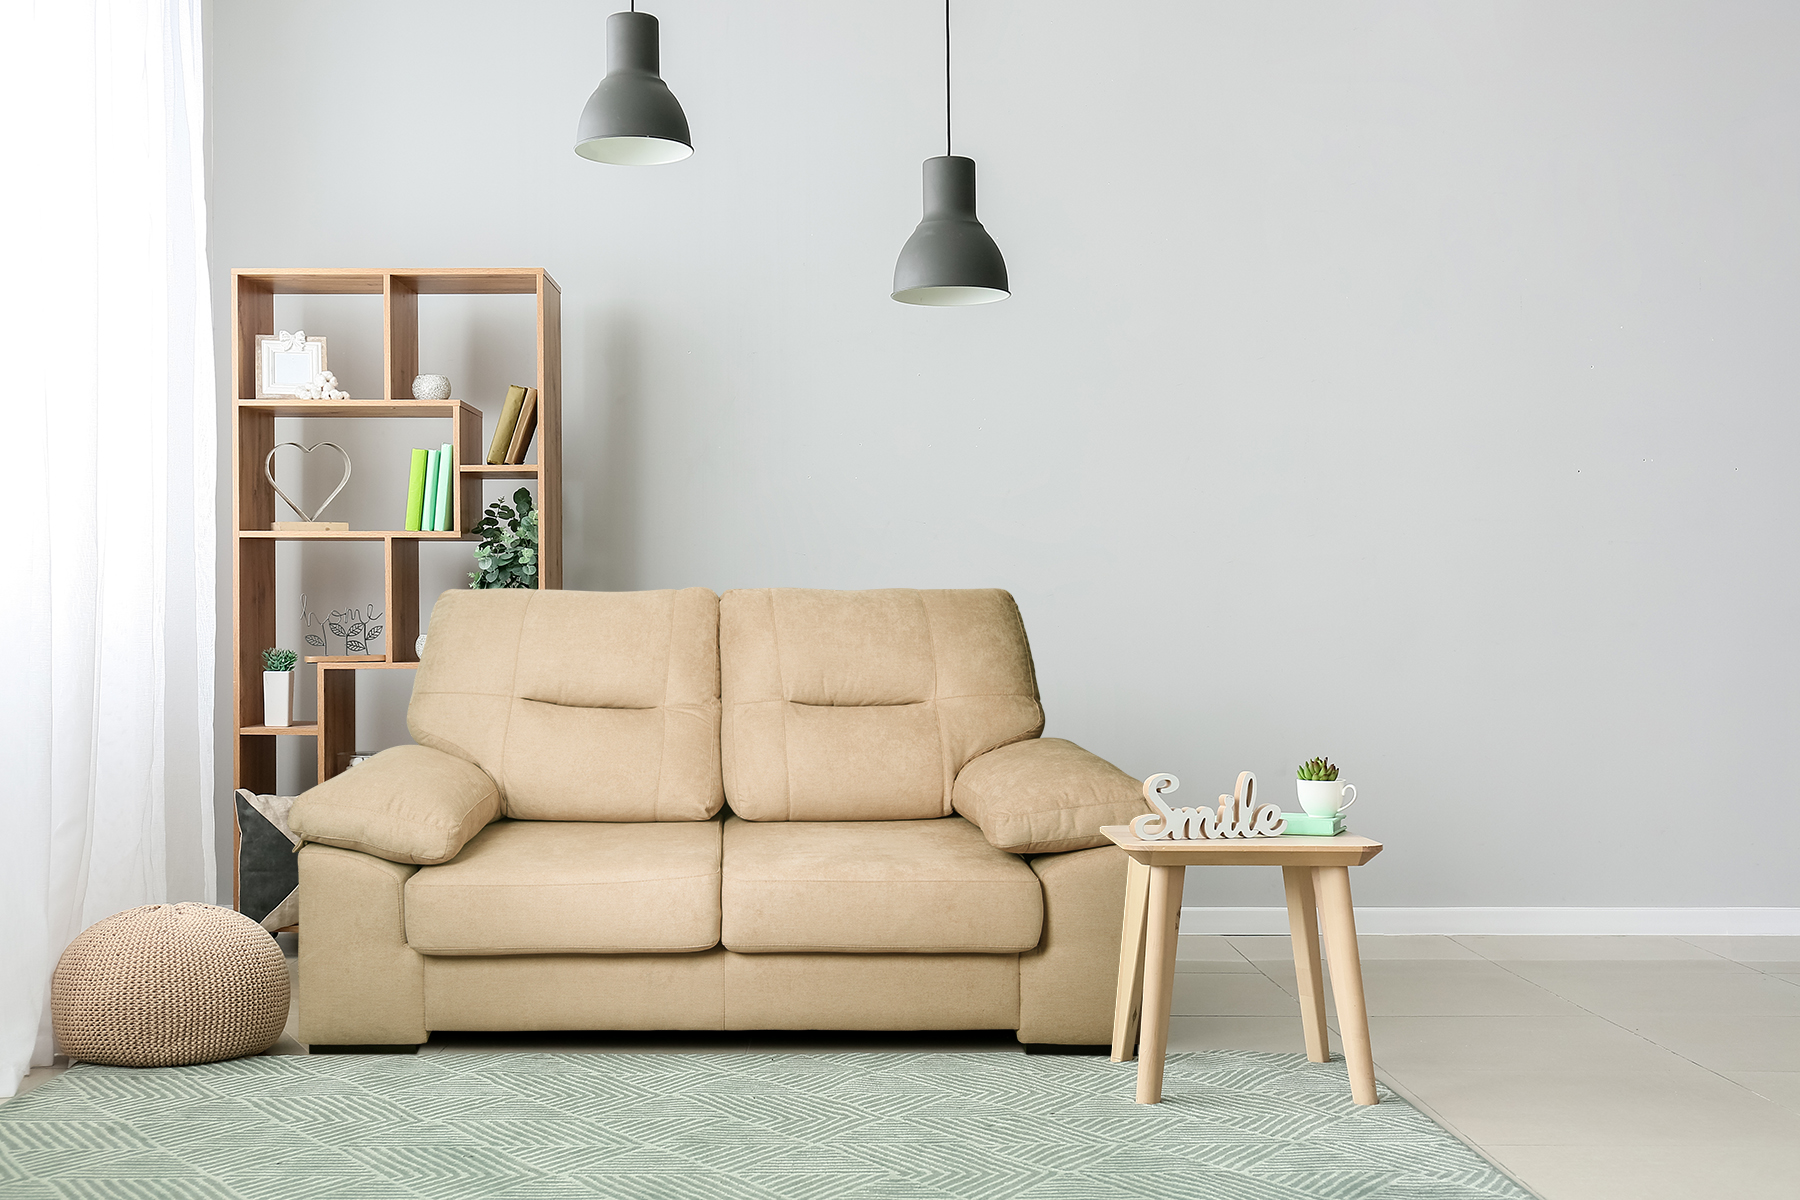 Reafirmar Mucho bien bueno vacío Buscas comprar un sofá? No te pierdas la nueva colección de sofás de Sueños  ZZZ - Sueños ZZZ - Blog